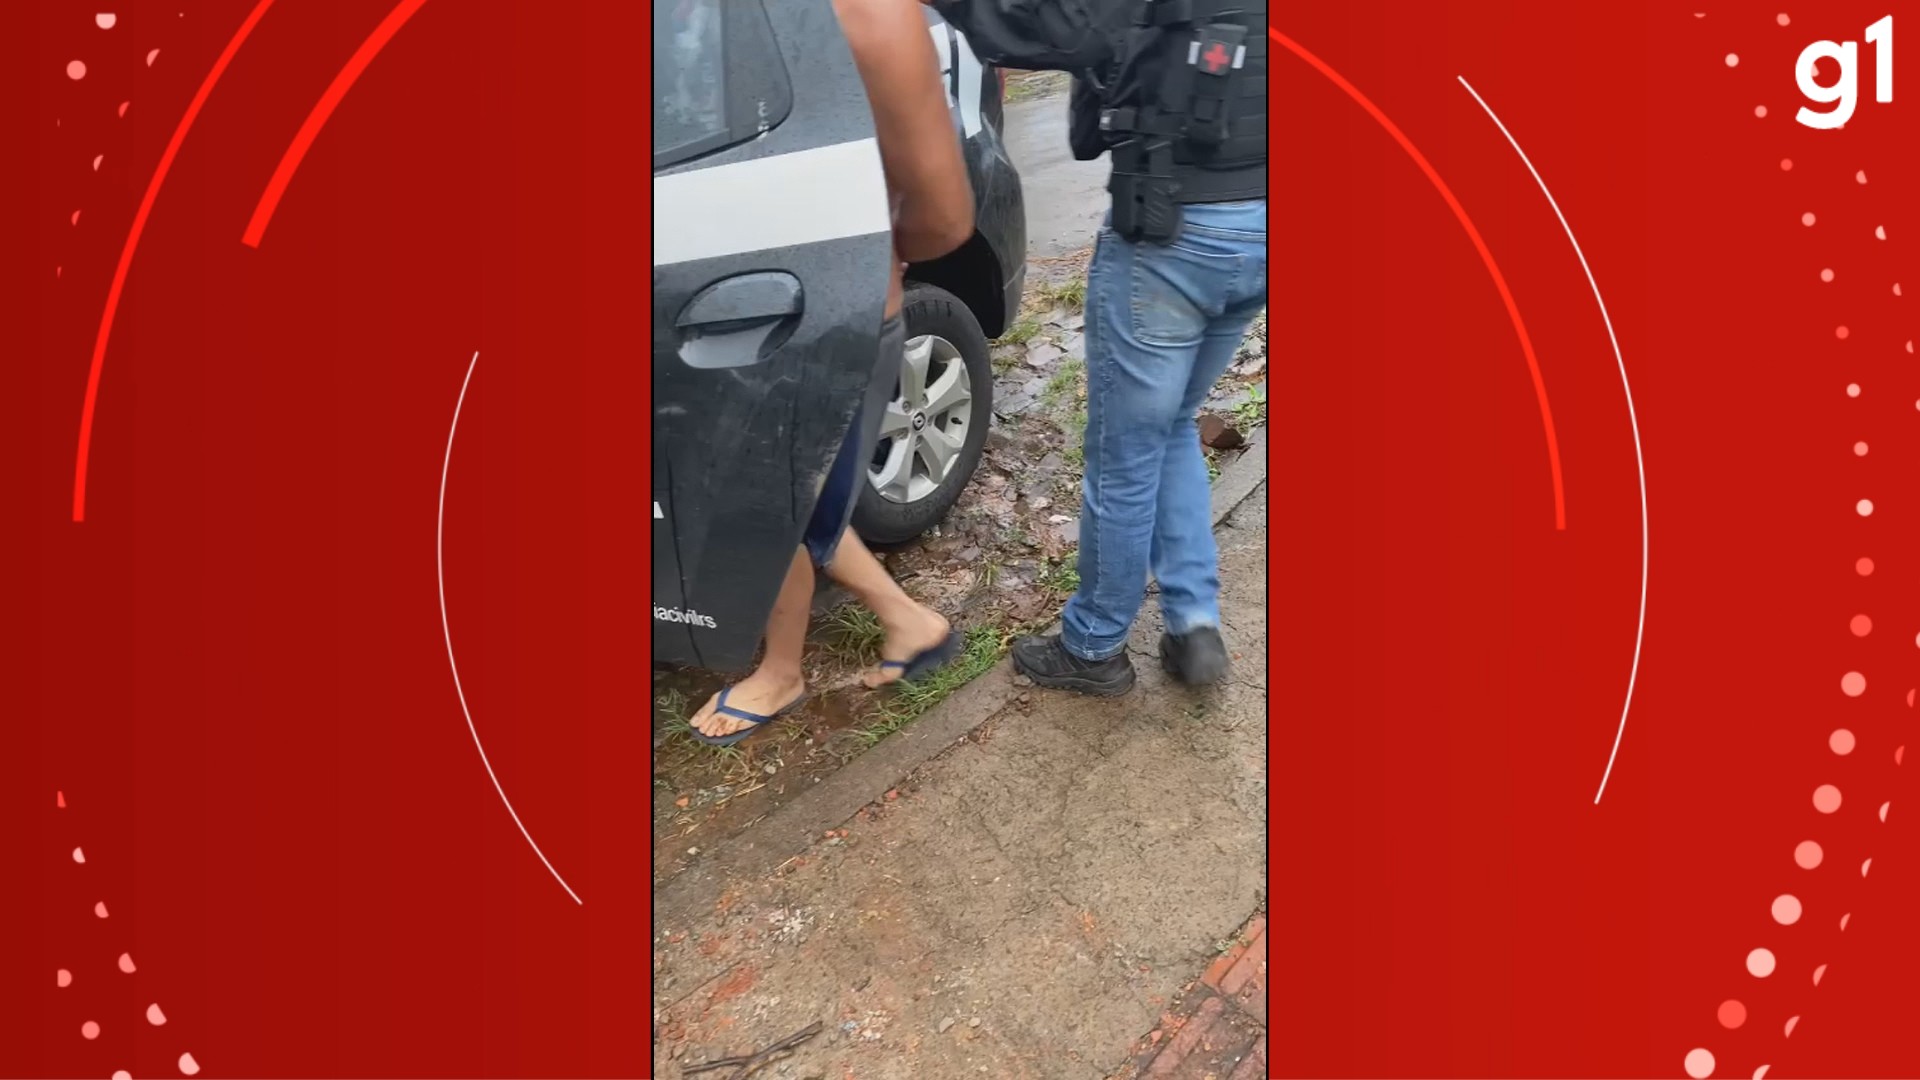 Adolescente é apreendido por jogar gasolina e atear fogo em jovem de 16 anos em Santo Ângelo, diz polícia